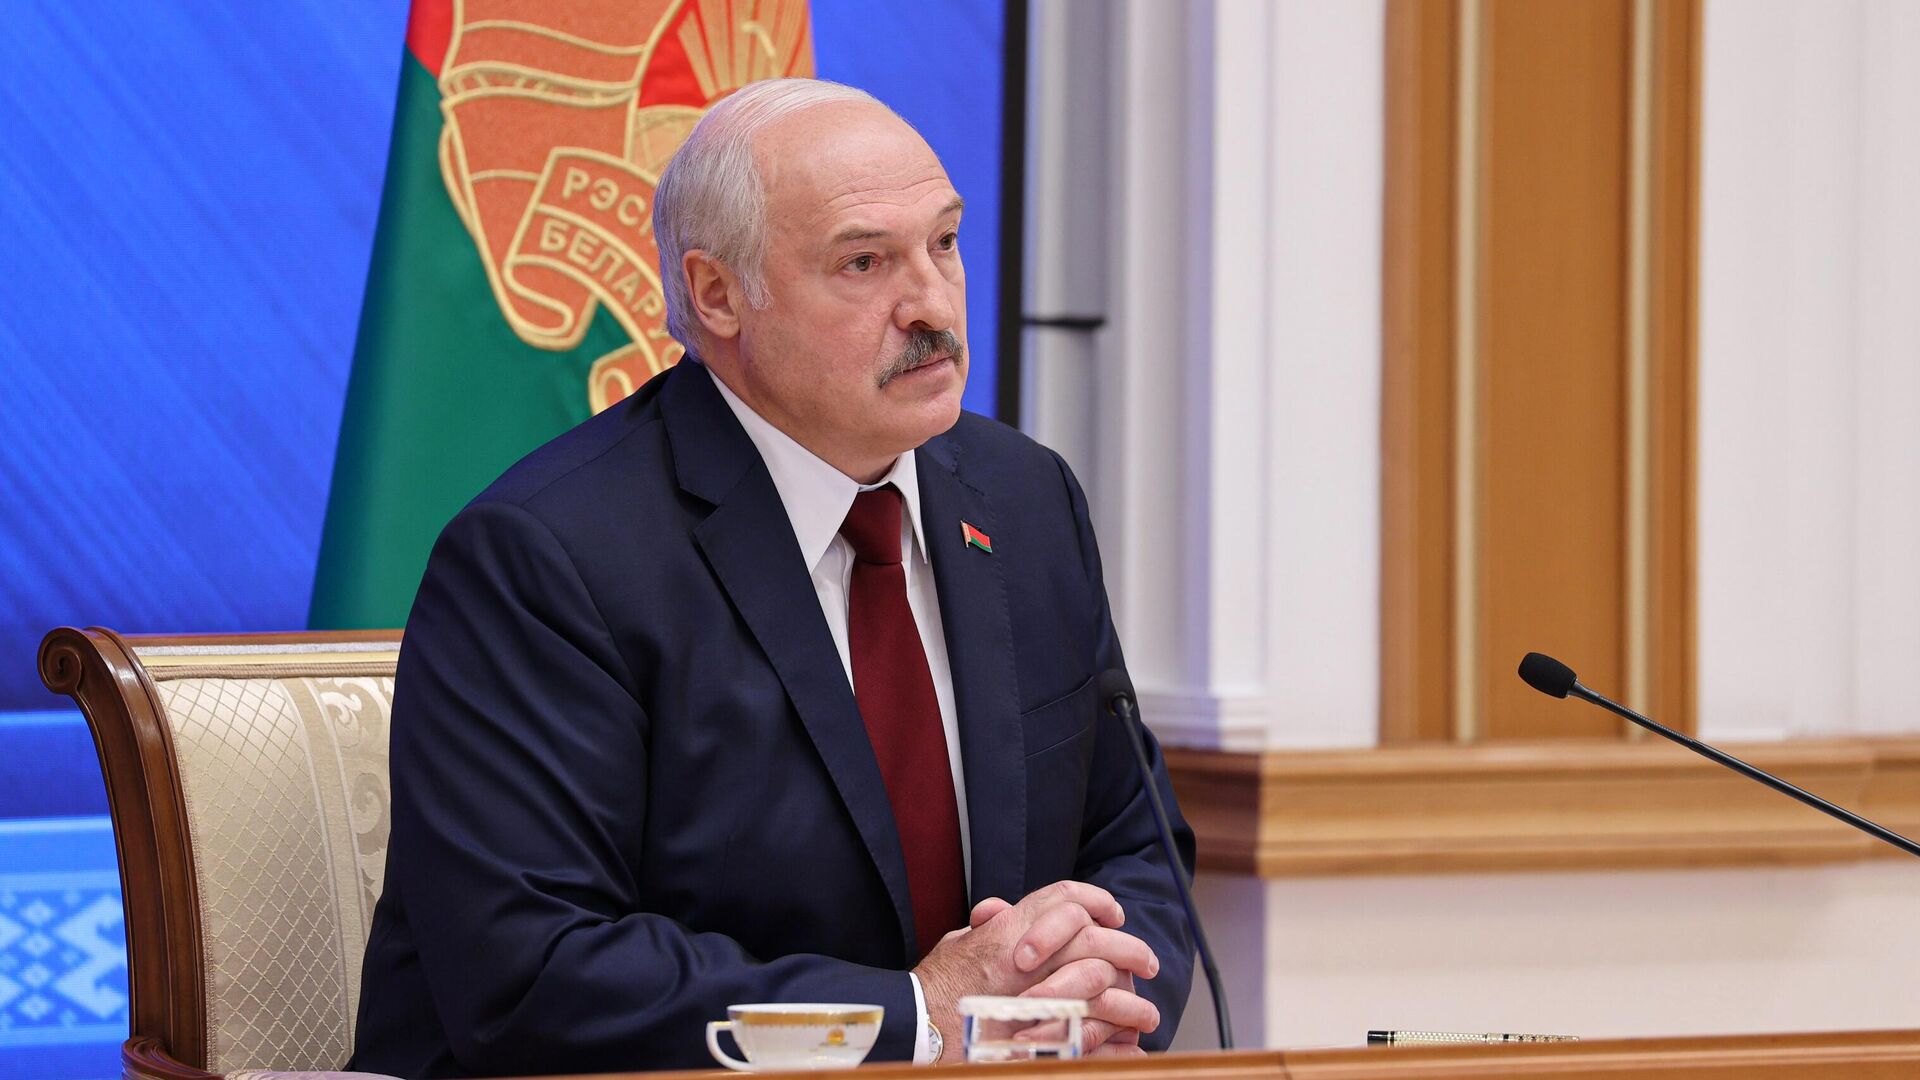 Президент Белоруссии Александр Лукашенко во время встречи с журналистами, представителями общественности, экспертного и медийного сообщества1